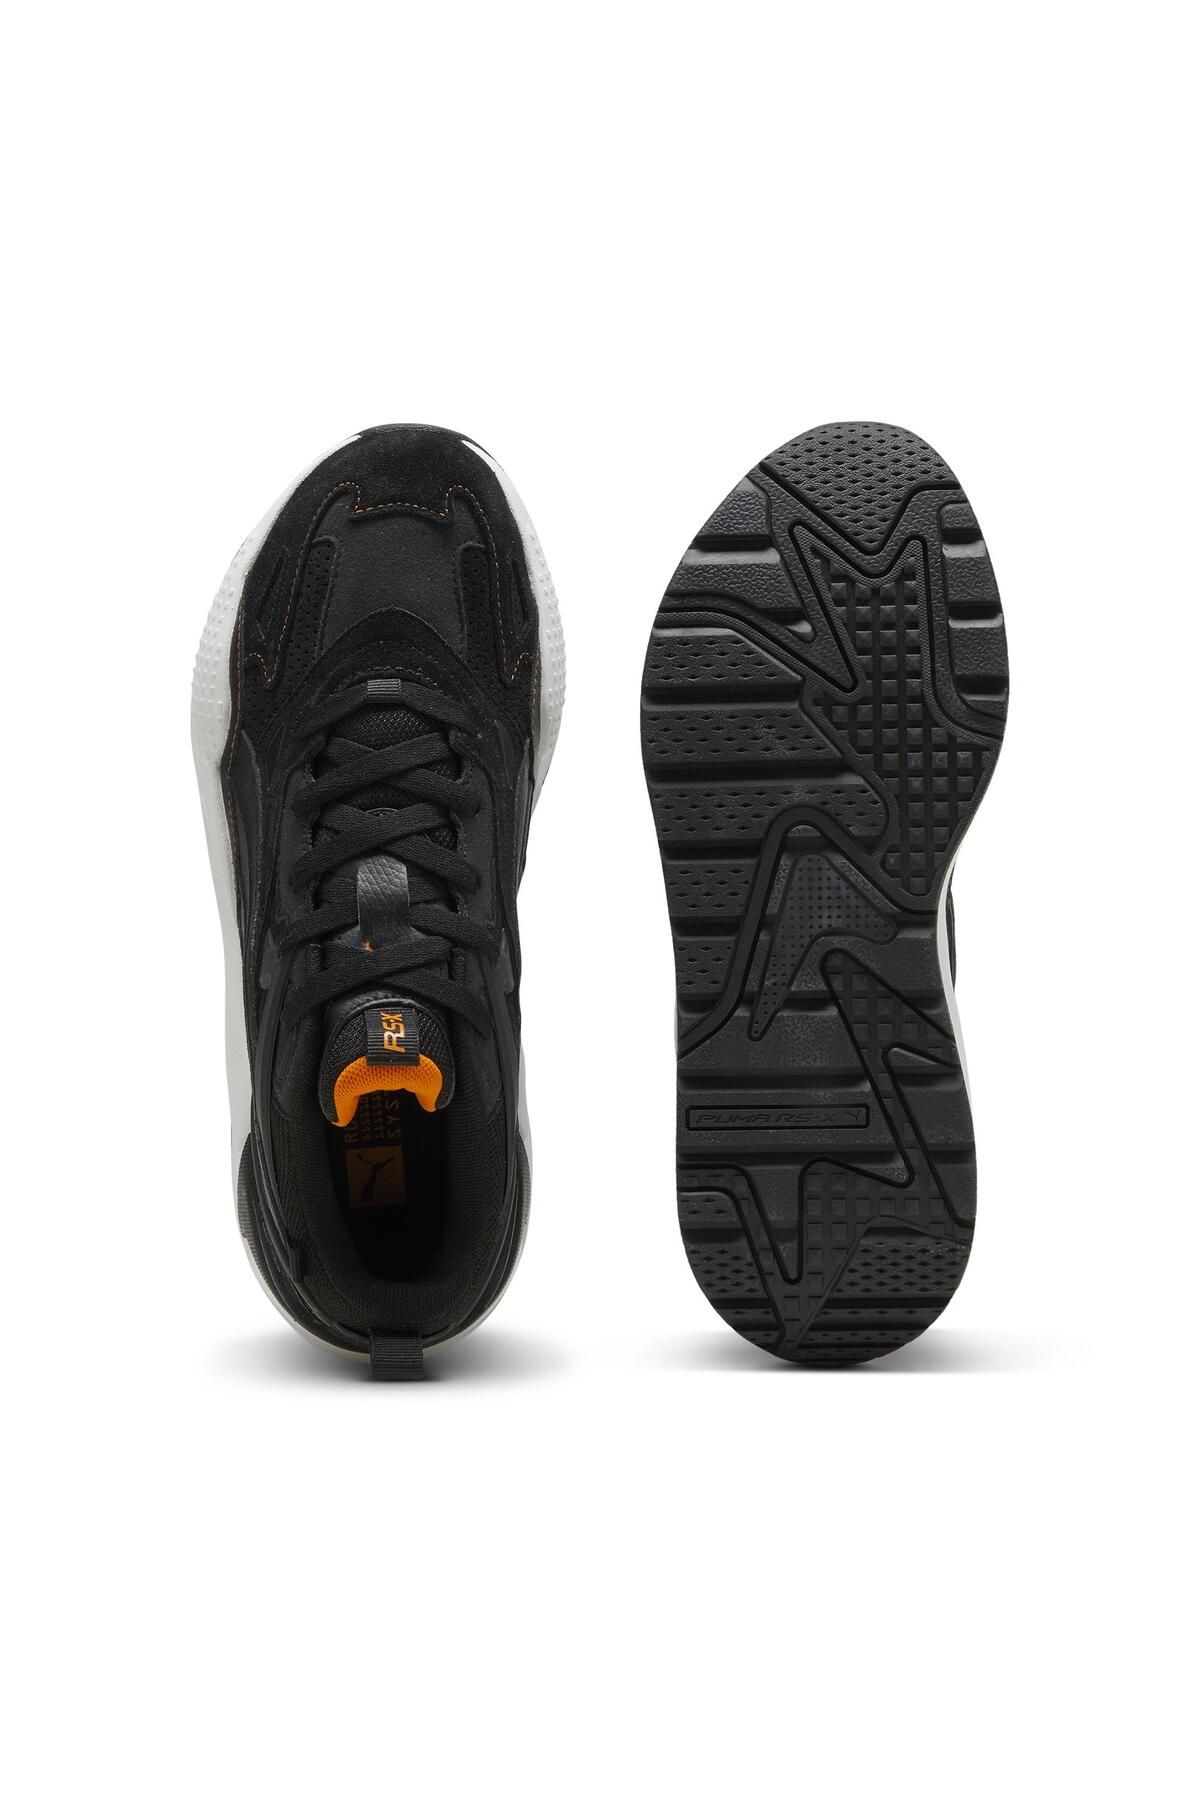 Puma RS-X Efekt Perf-Black Sneaker